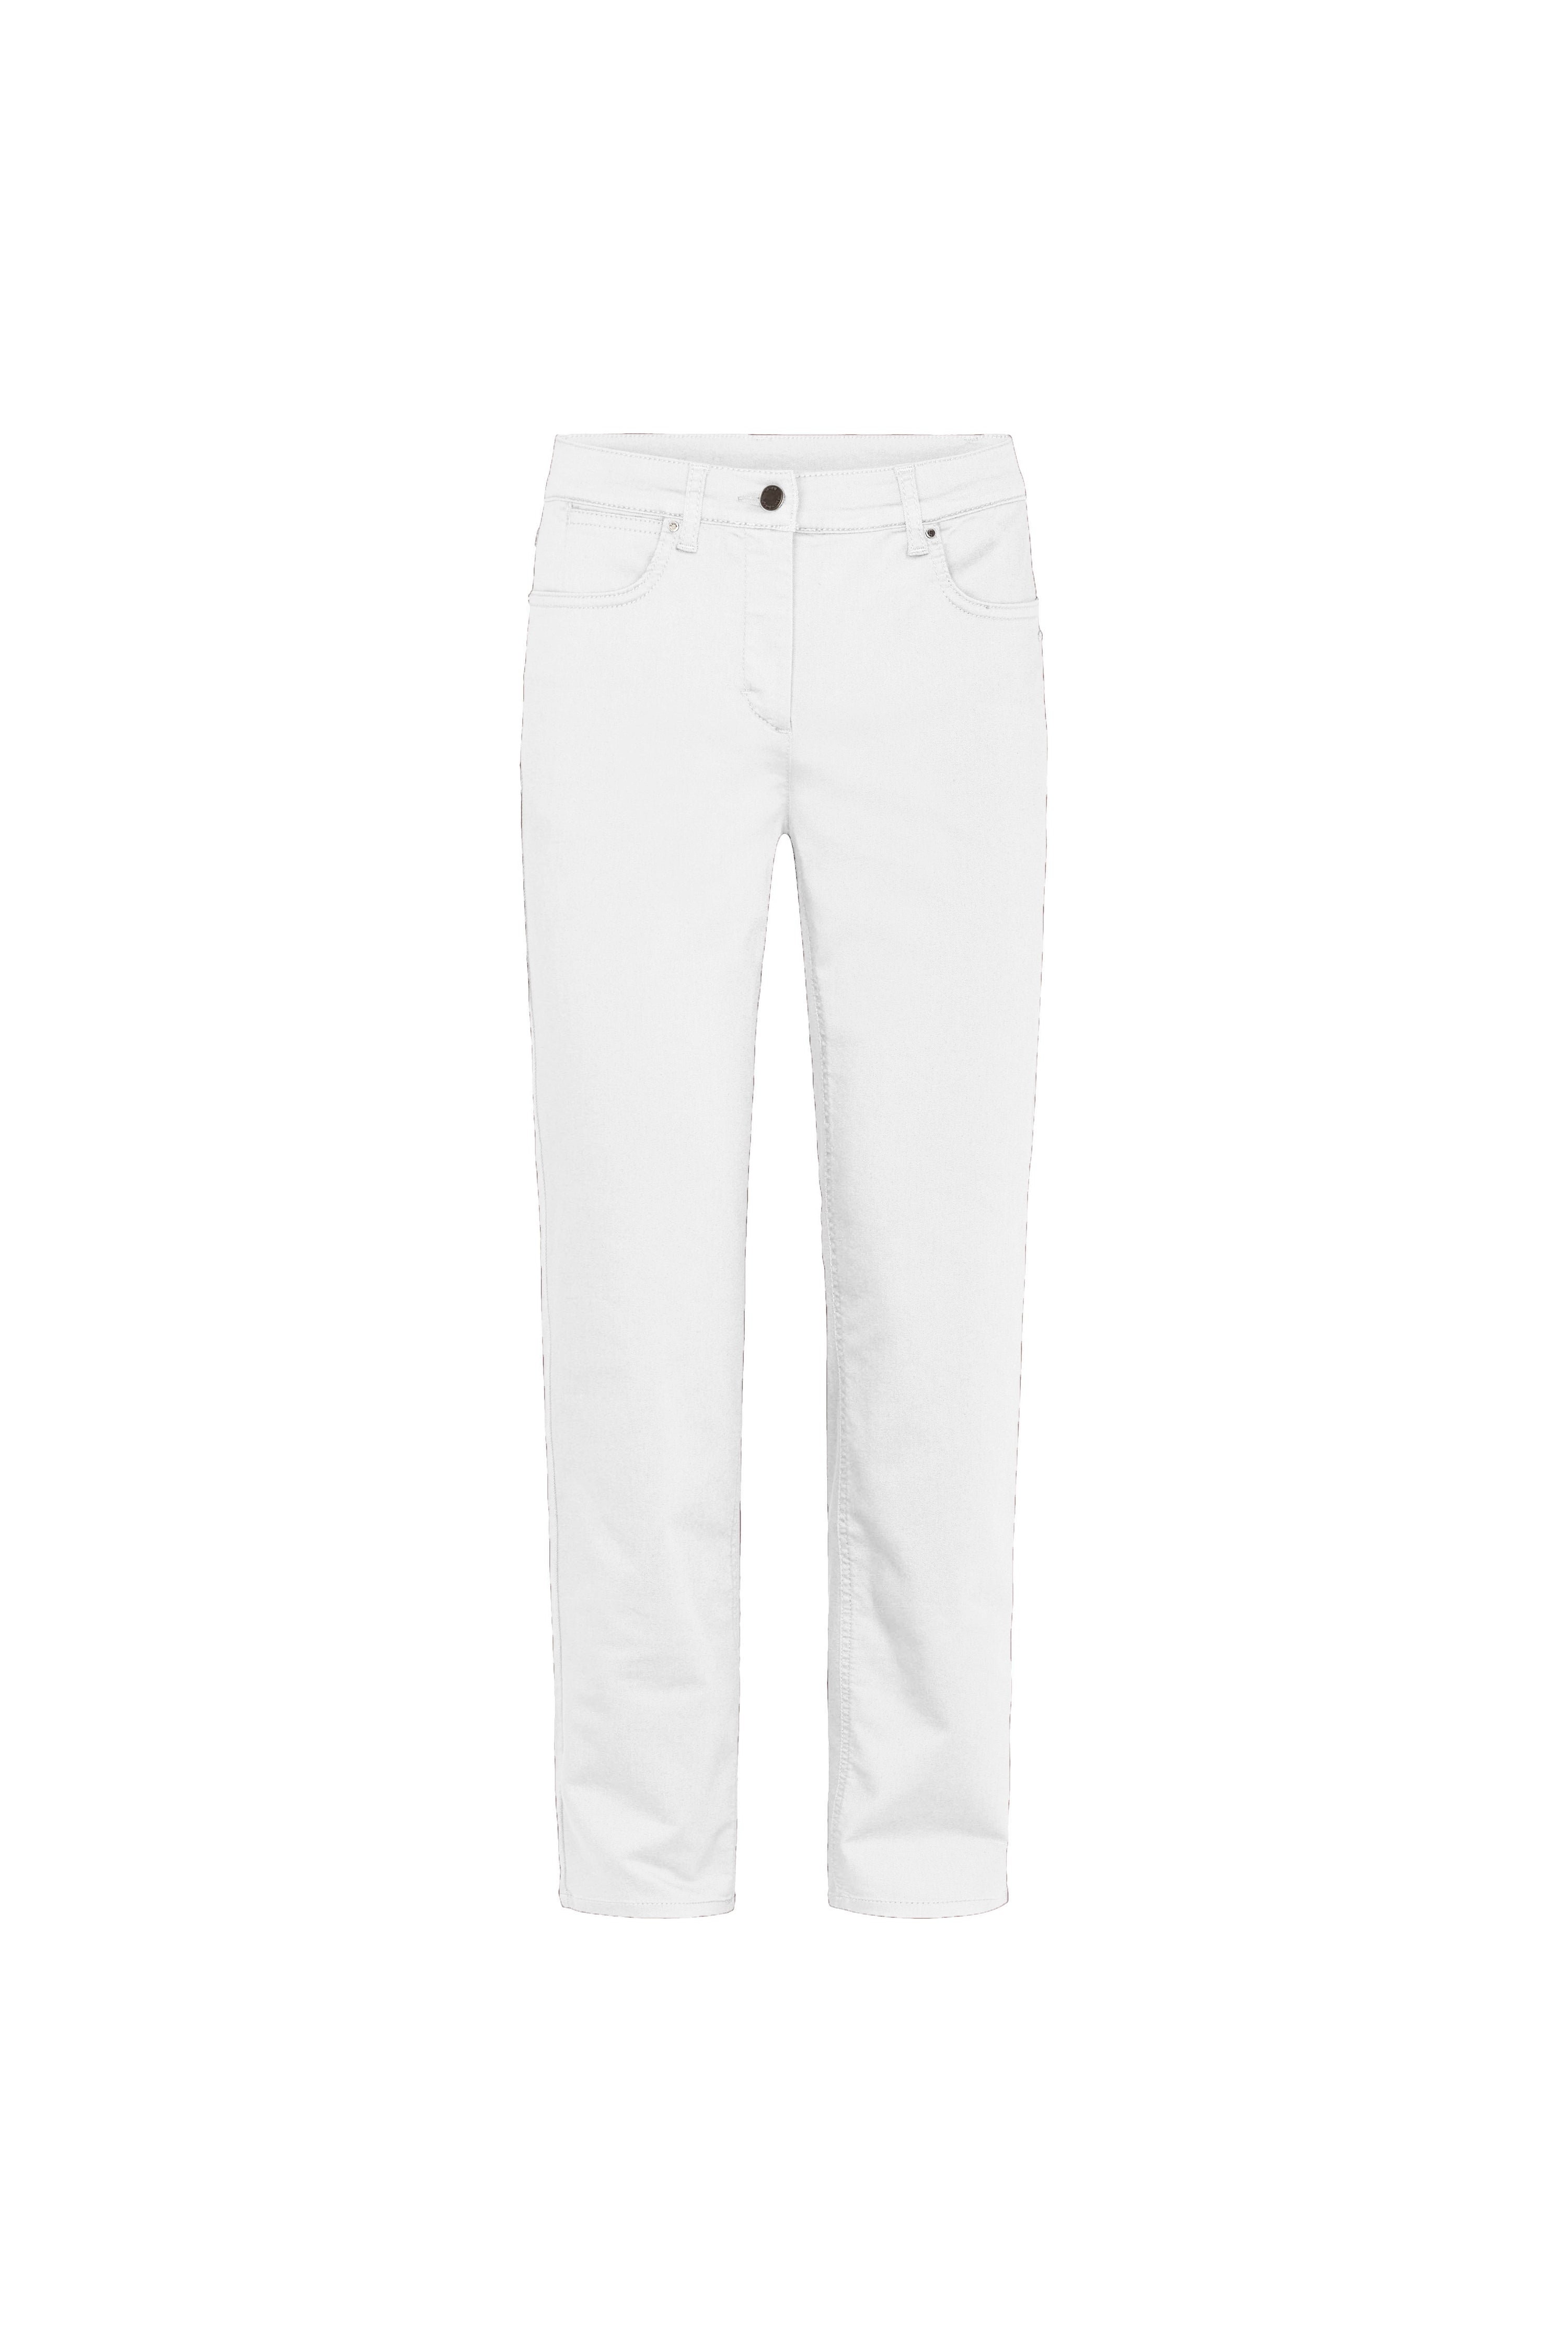 LAURIE  Charlotte Regular - Medium Length Trousers REGULAR 10100 White